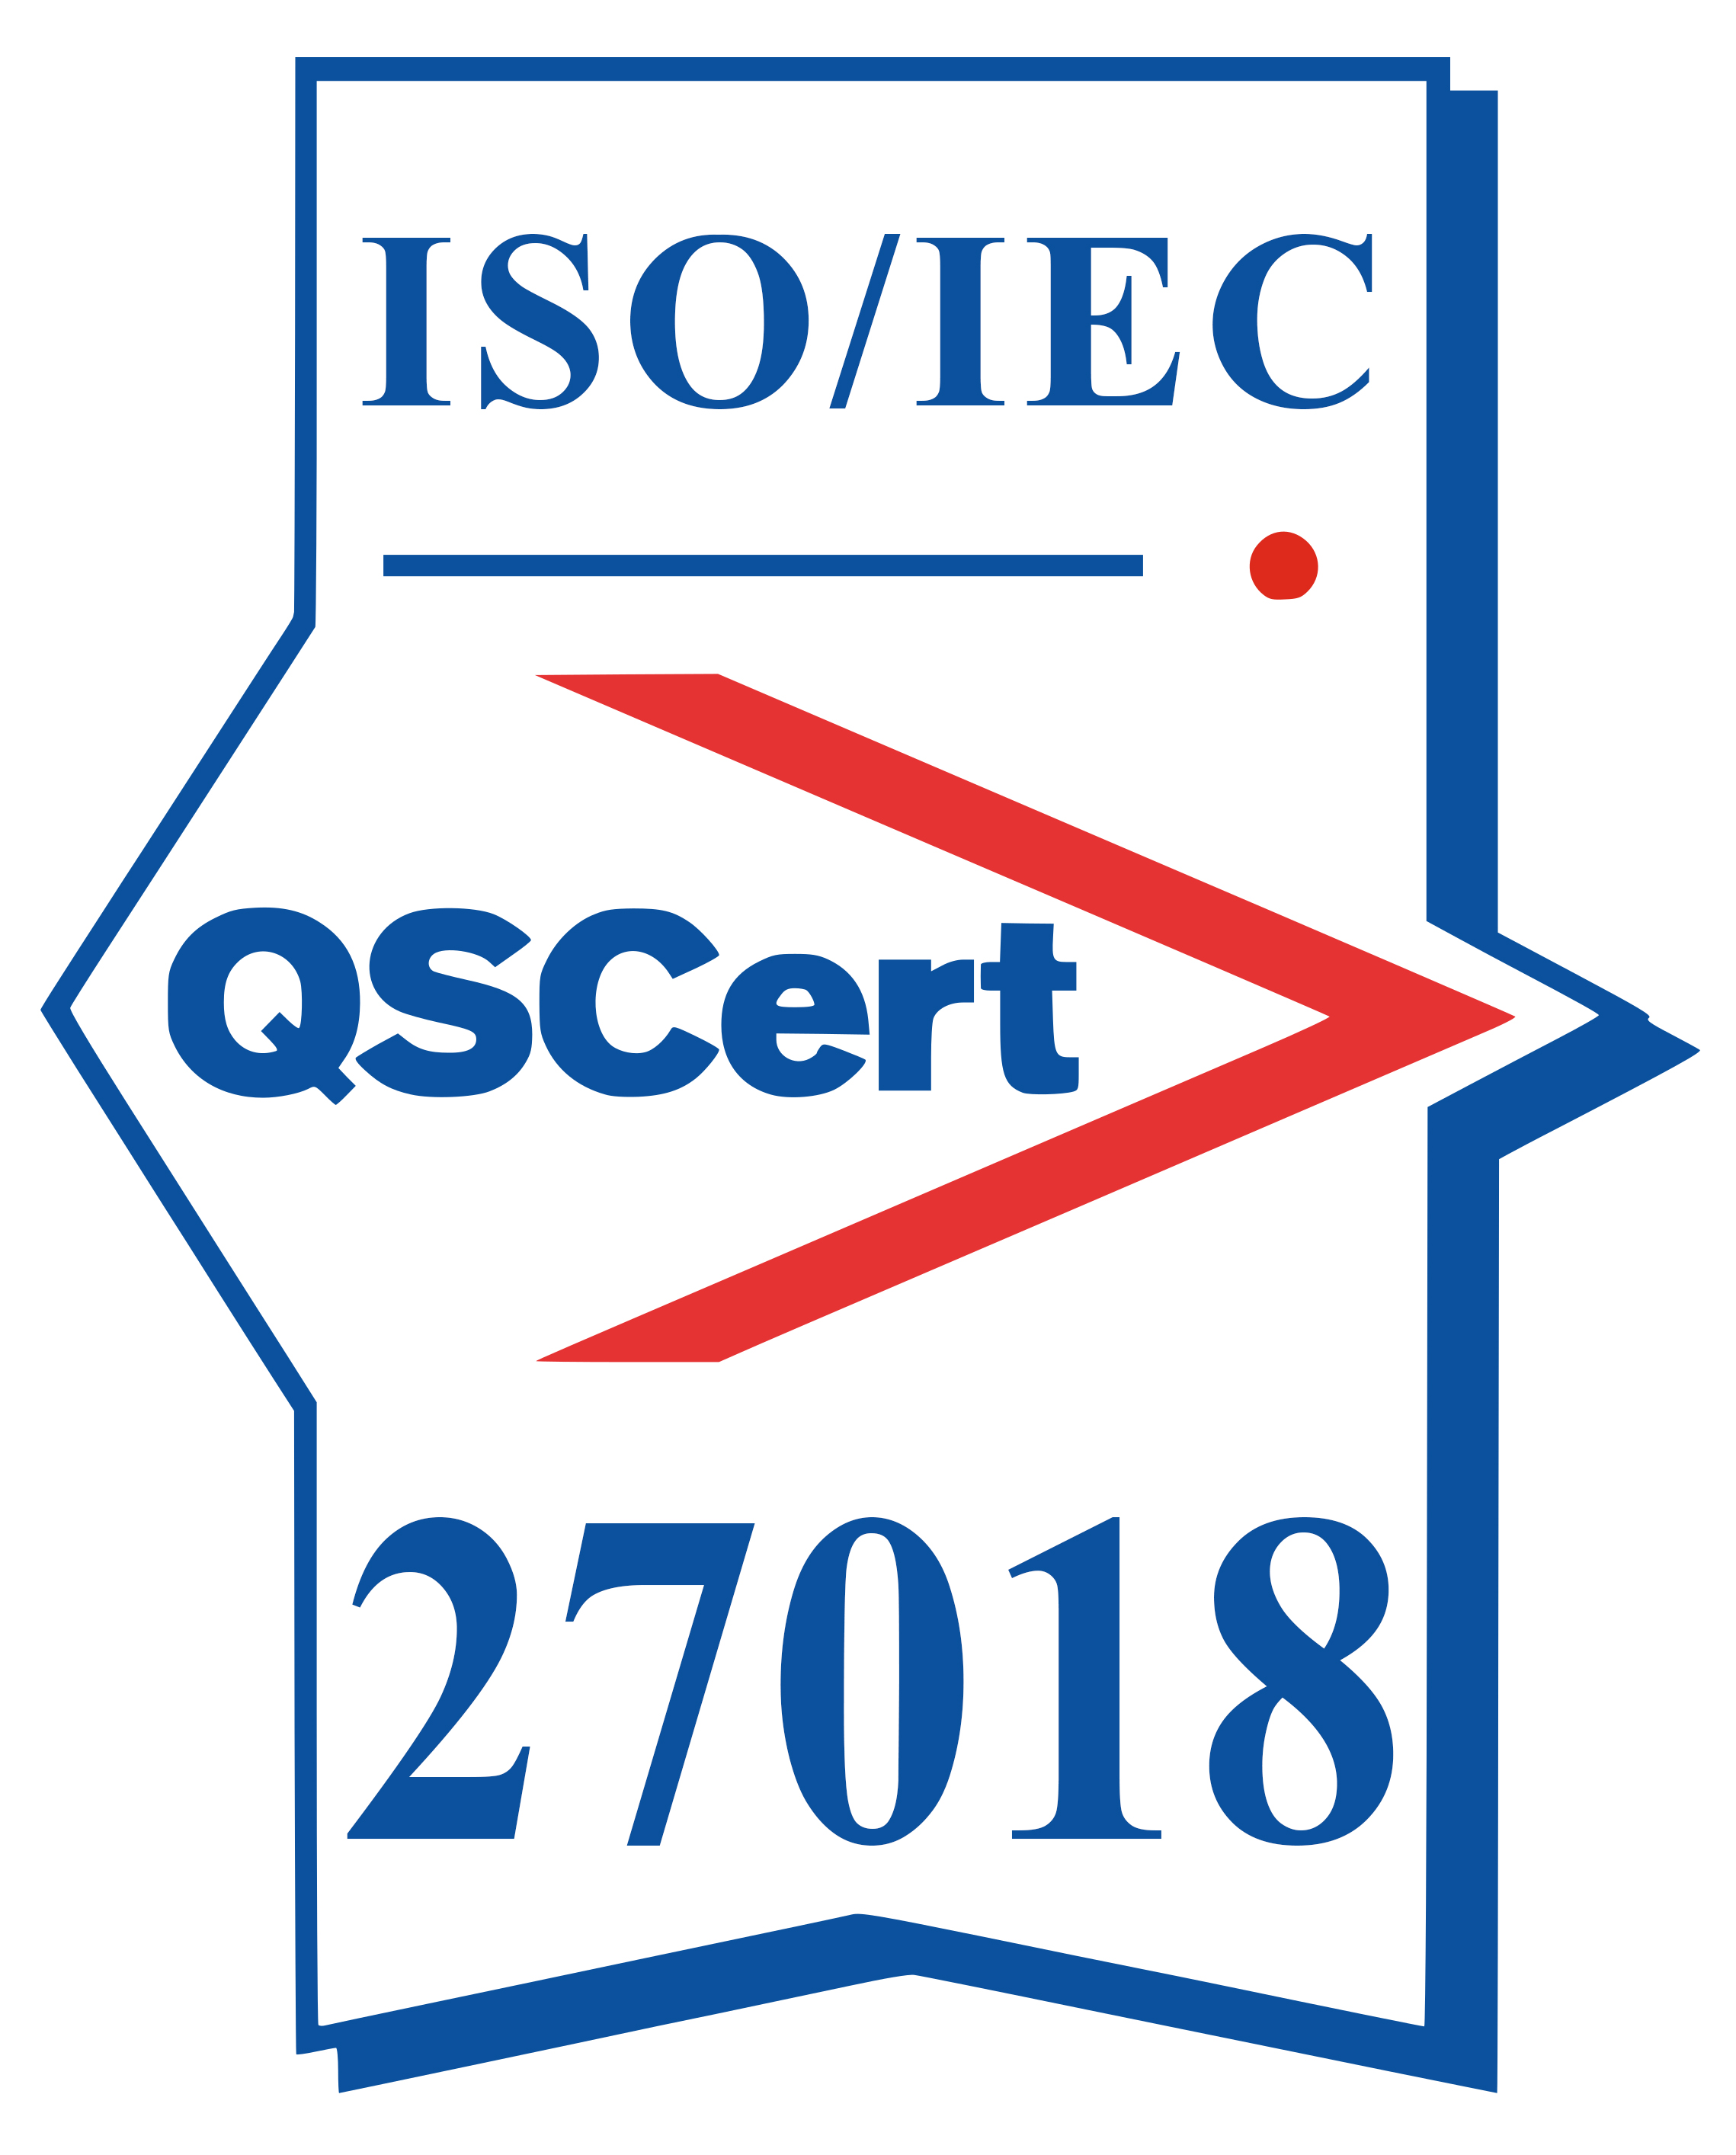 ISOIEC-27018